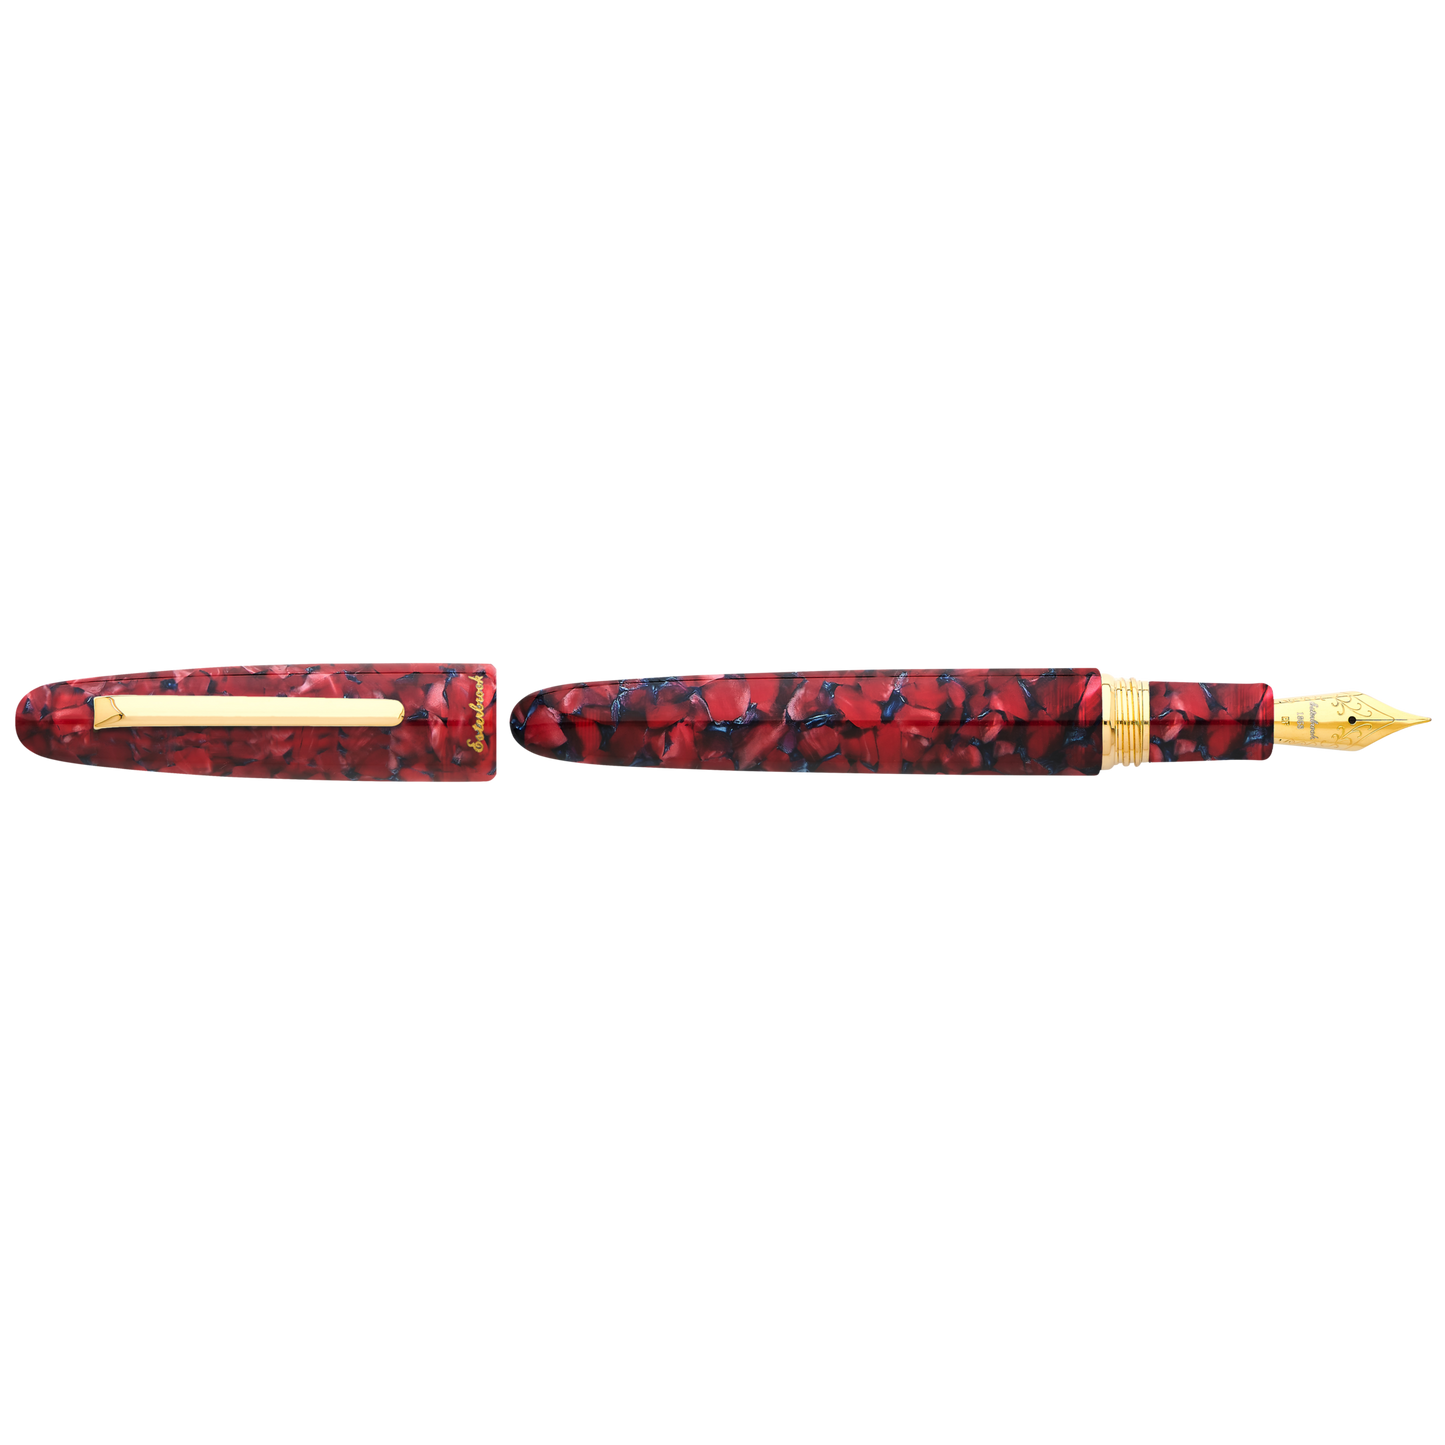 Esterbrook Estie Oversized Fountain Pen - Scarlet with Gold Trim